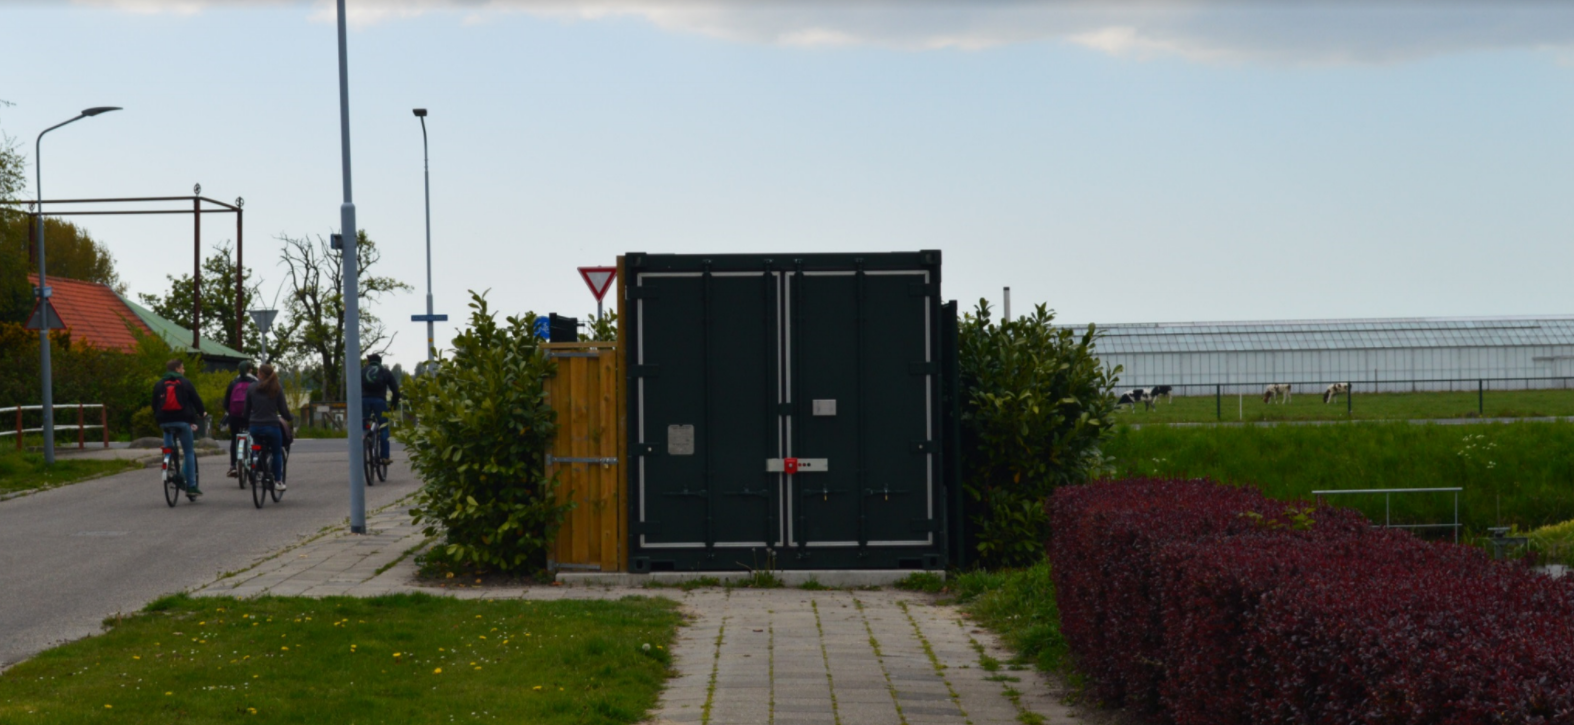 coservar-energia11 Un medio para conservar energía y reducir las emisiones de carbono en los Países Bajos